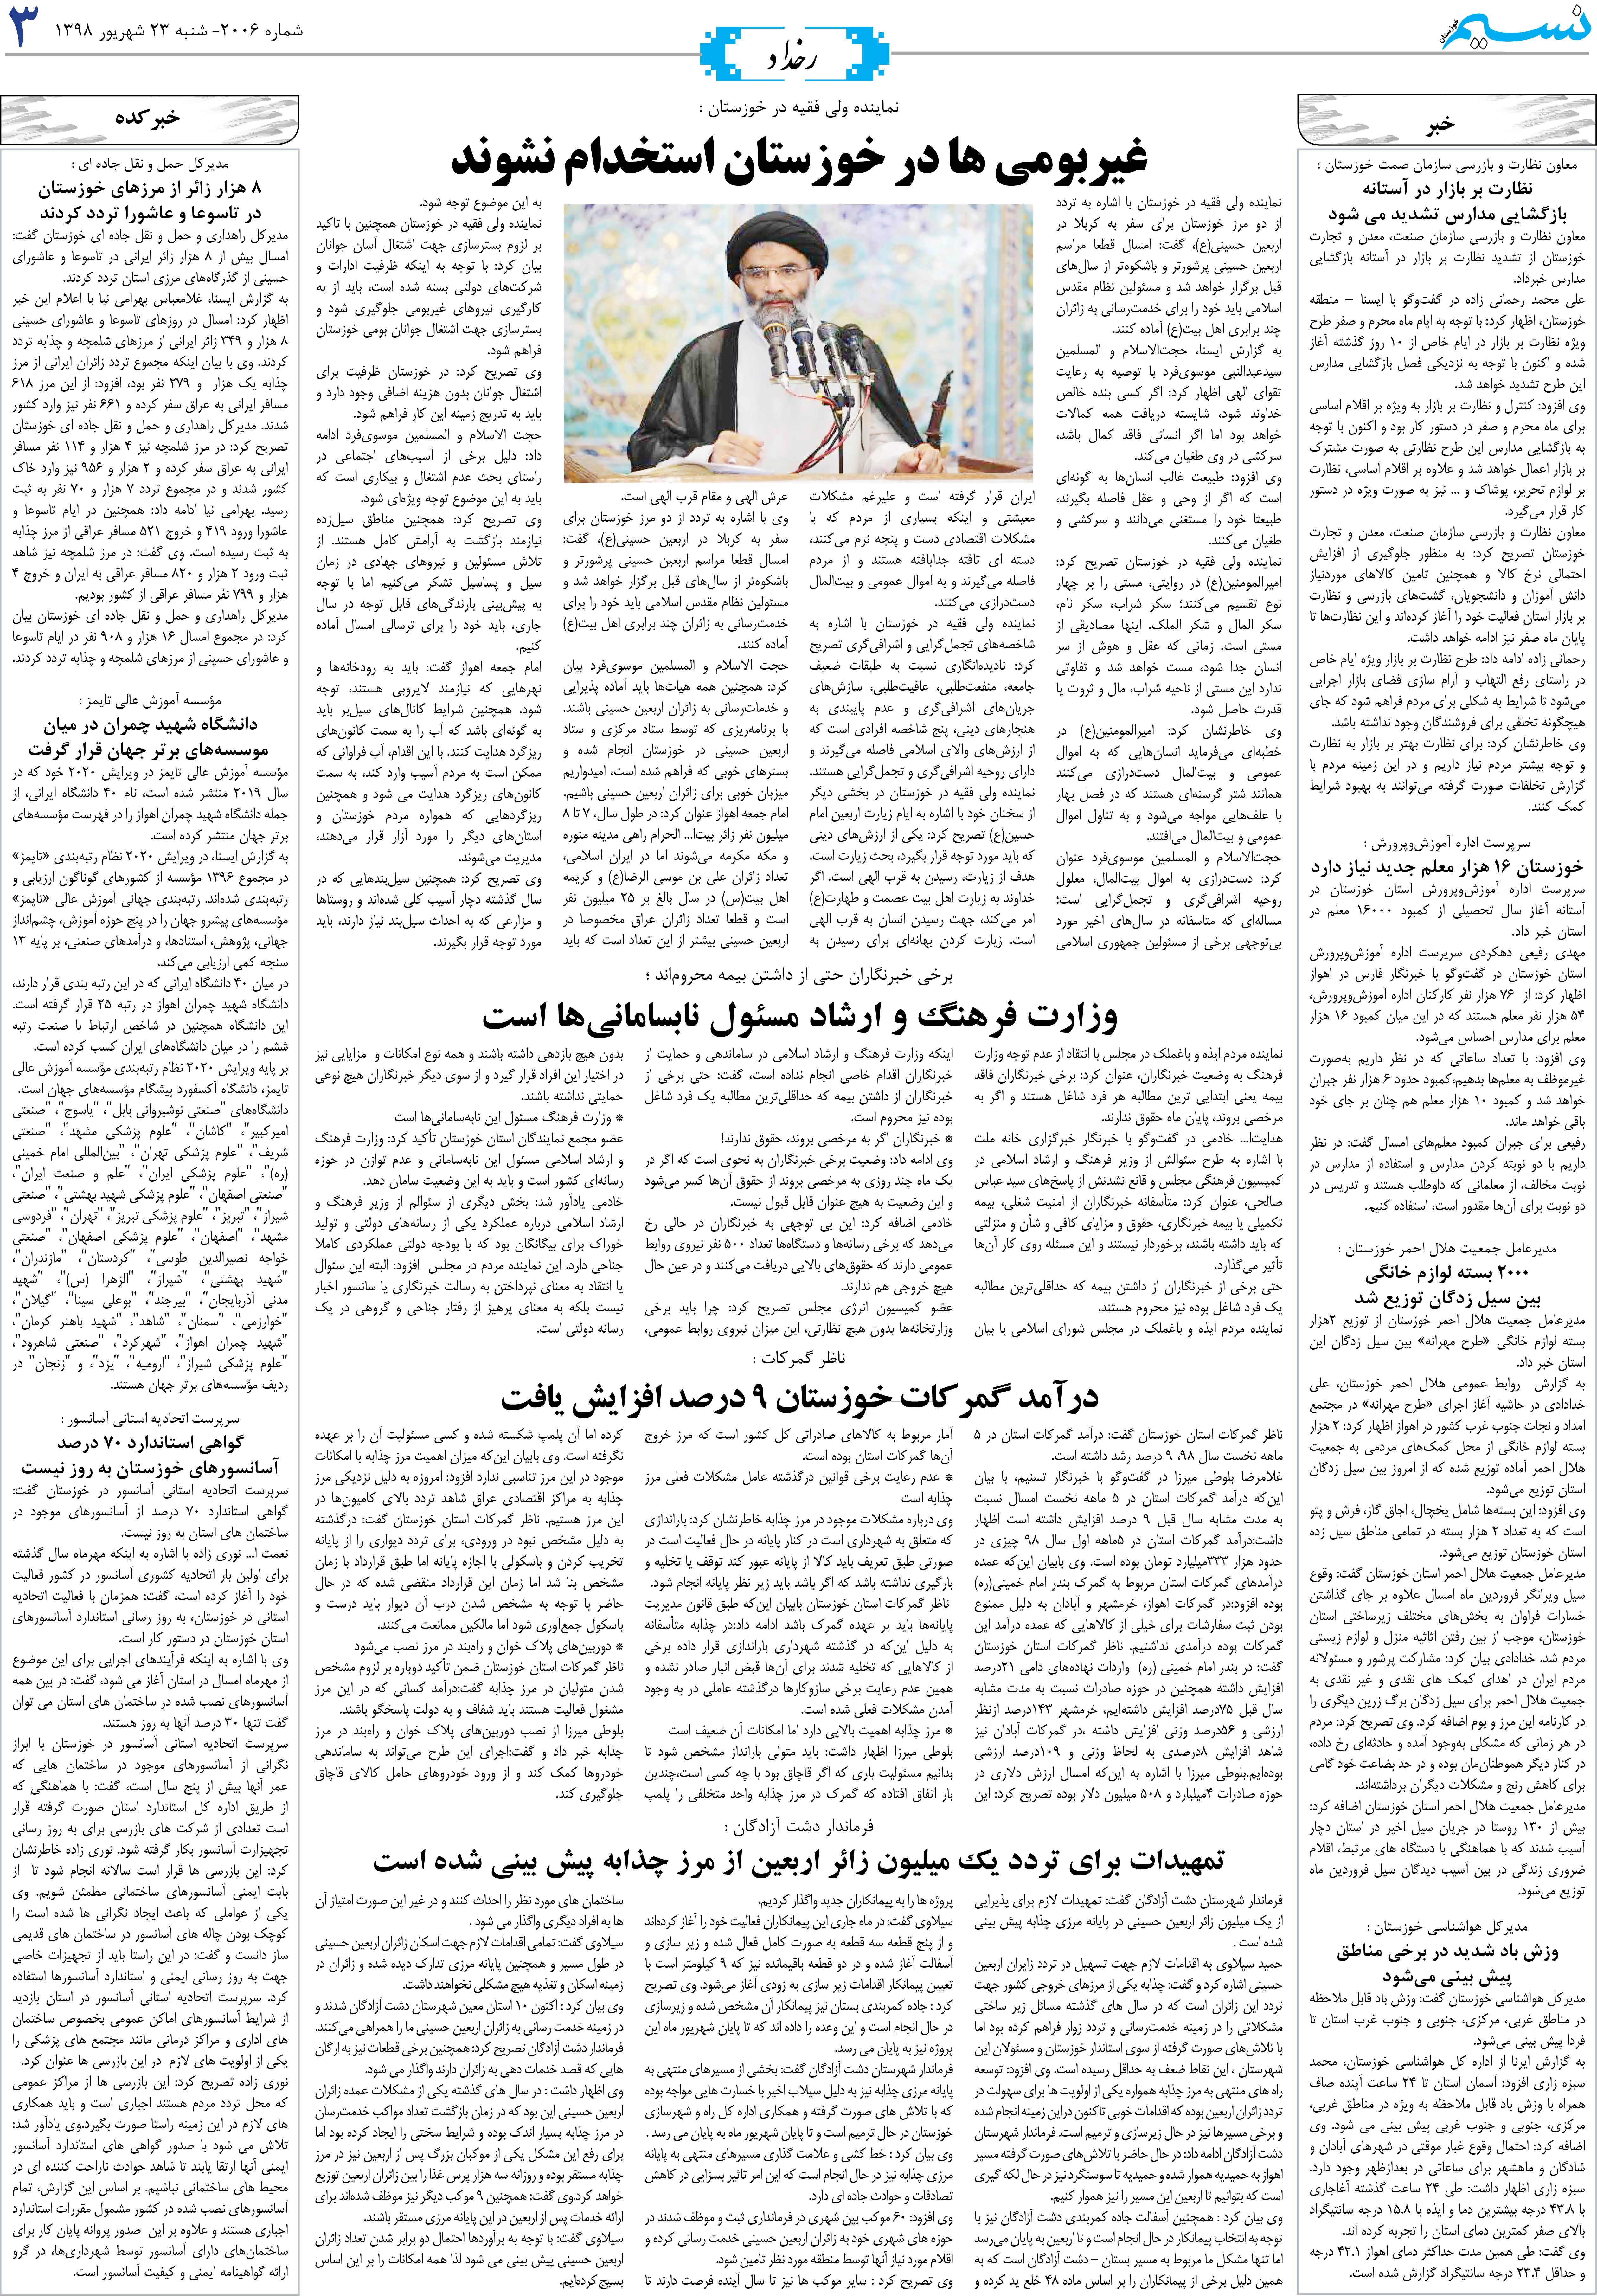 صفحه رخداد روزنامه نسیم شماره 2006